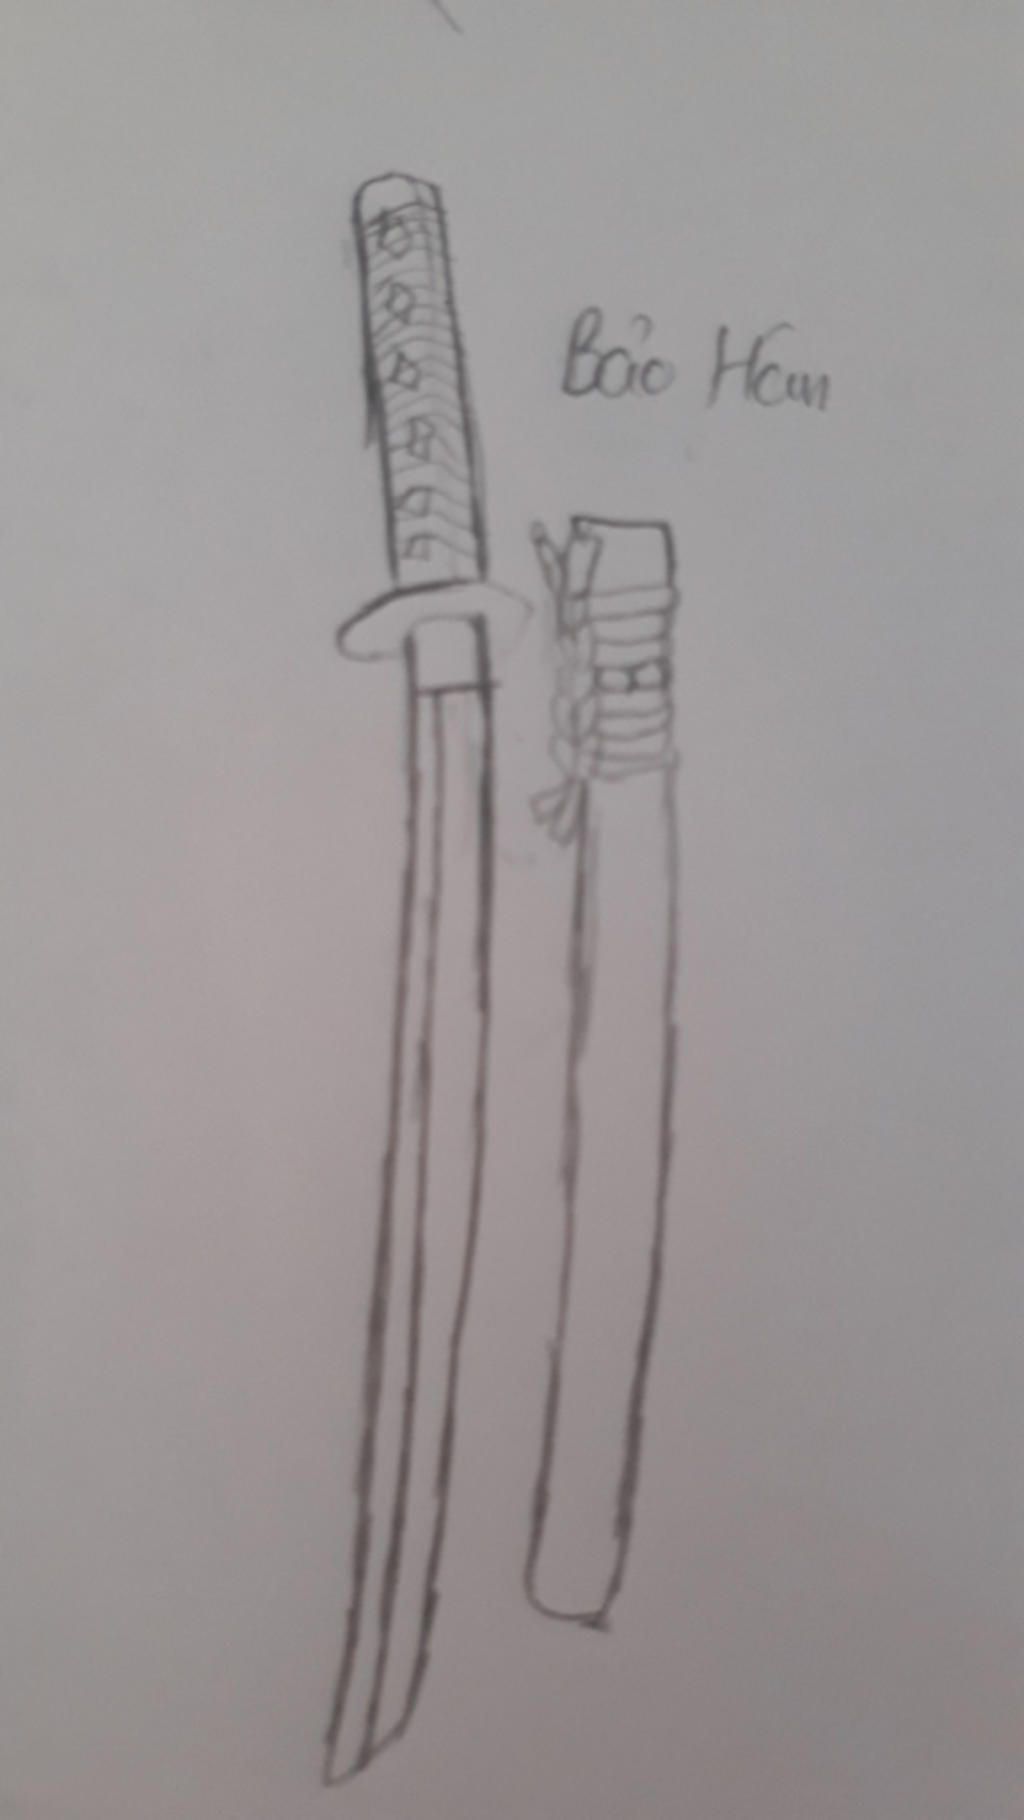 Cây kiếm katana - Với thiết kế đơn giản nhưng tinh tế, cây kiếm katana không chỉ là vũ khí mạnh mẽ mà còn là một tác phẩm nghệ thuật đẹp mắt. Hãy chiêm ngưỡng những hình ảnh tuyệt đẹp về chiếc kiếm này!